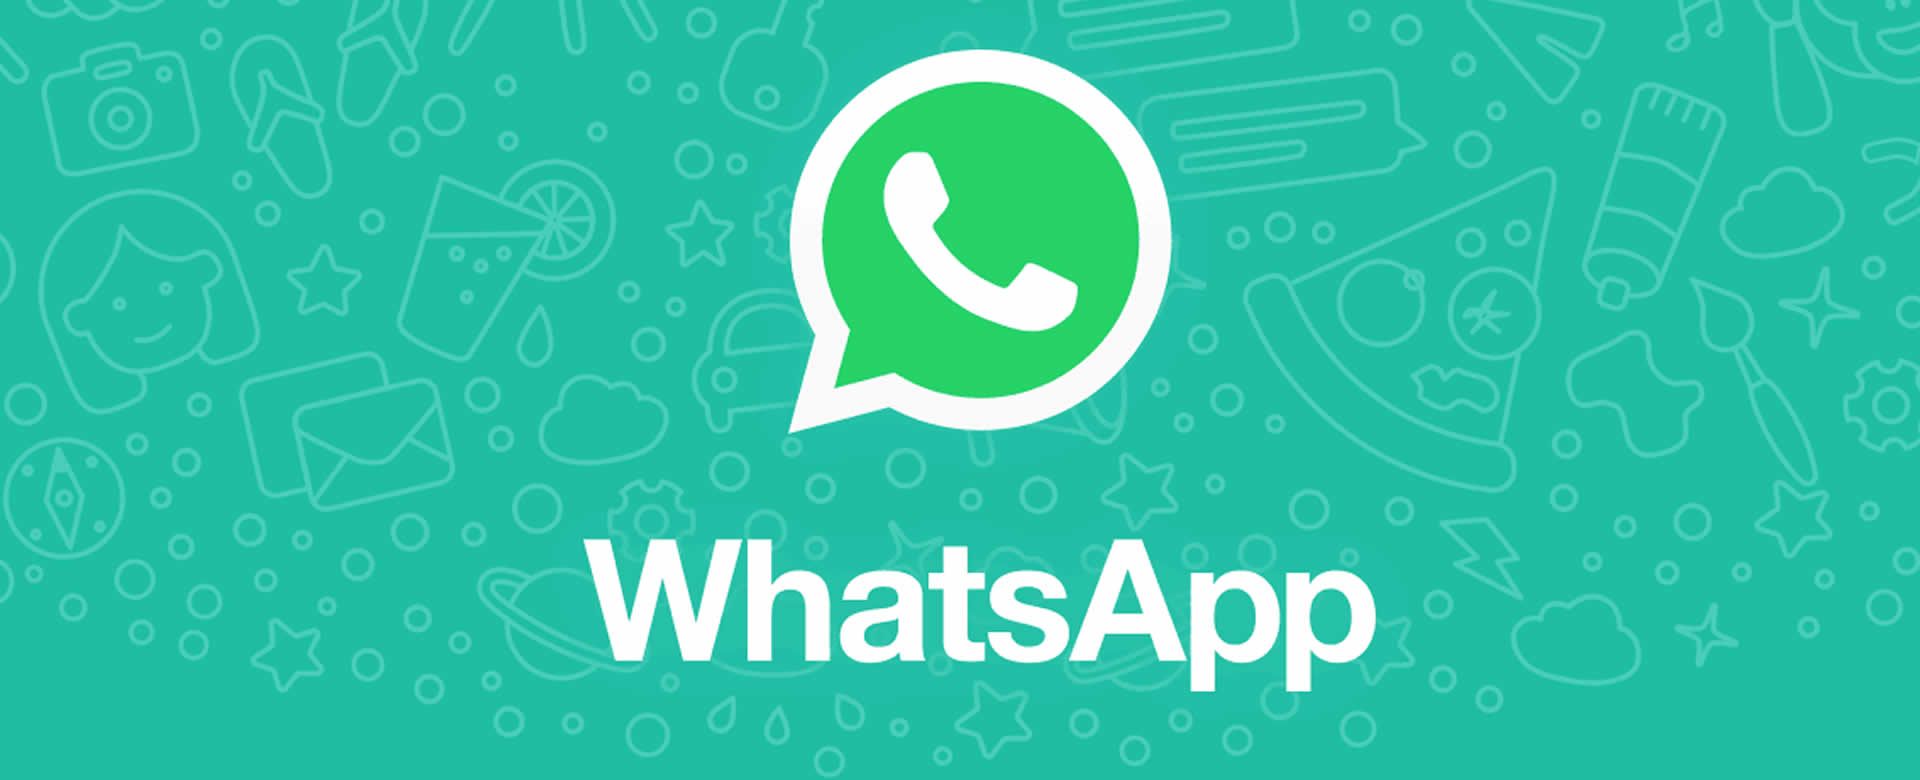 WhatsApp dejará de dar soporte para ciertos móviles en el año 2020